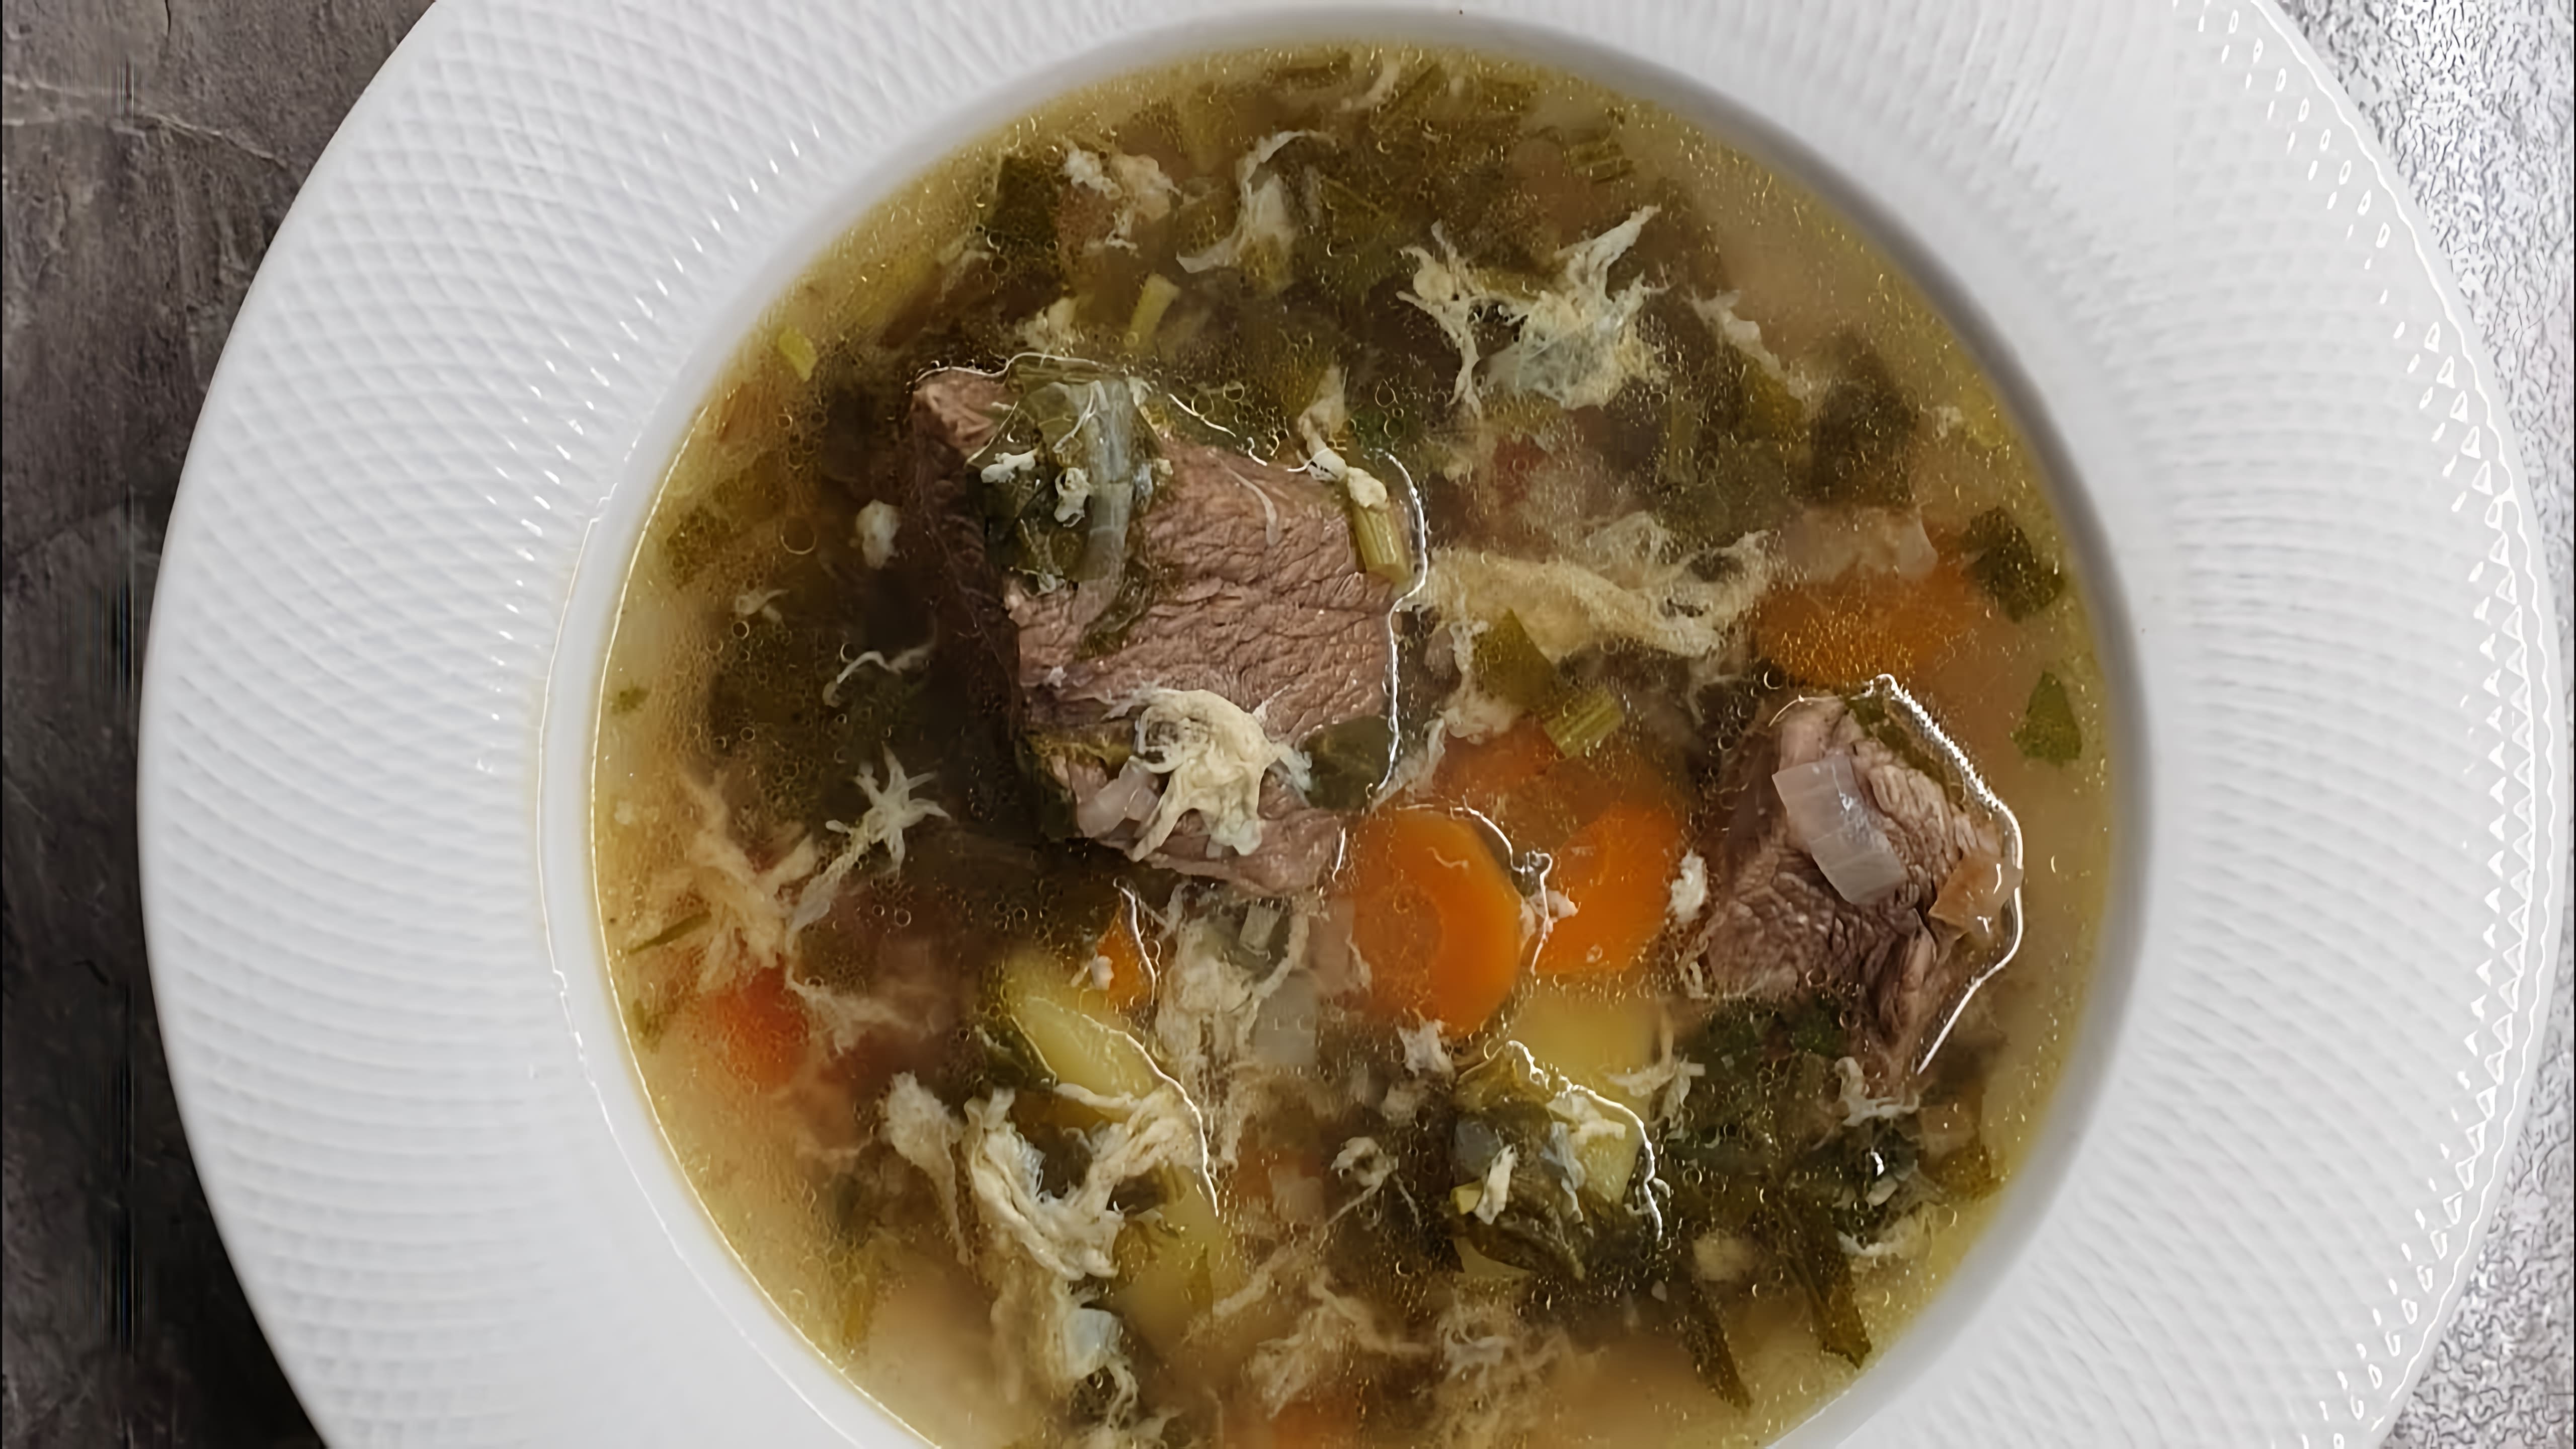 В этом видео-ролике будет представлен рецепт приготовления зелёного борща или щавелевого супа